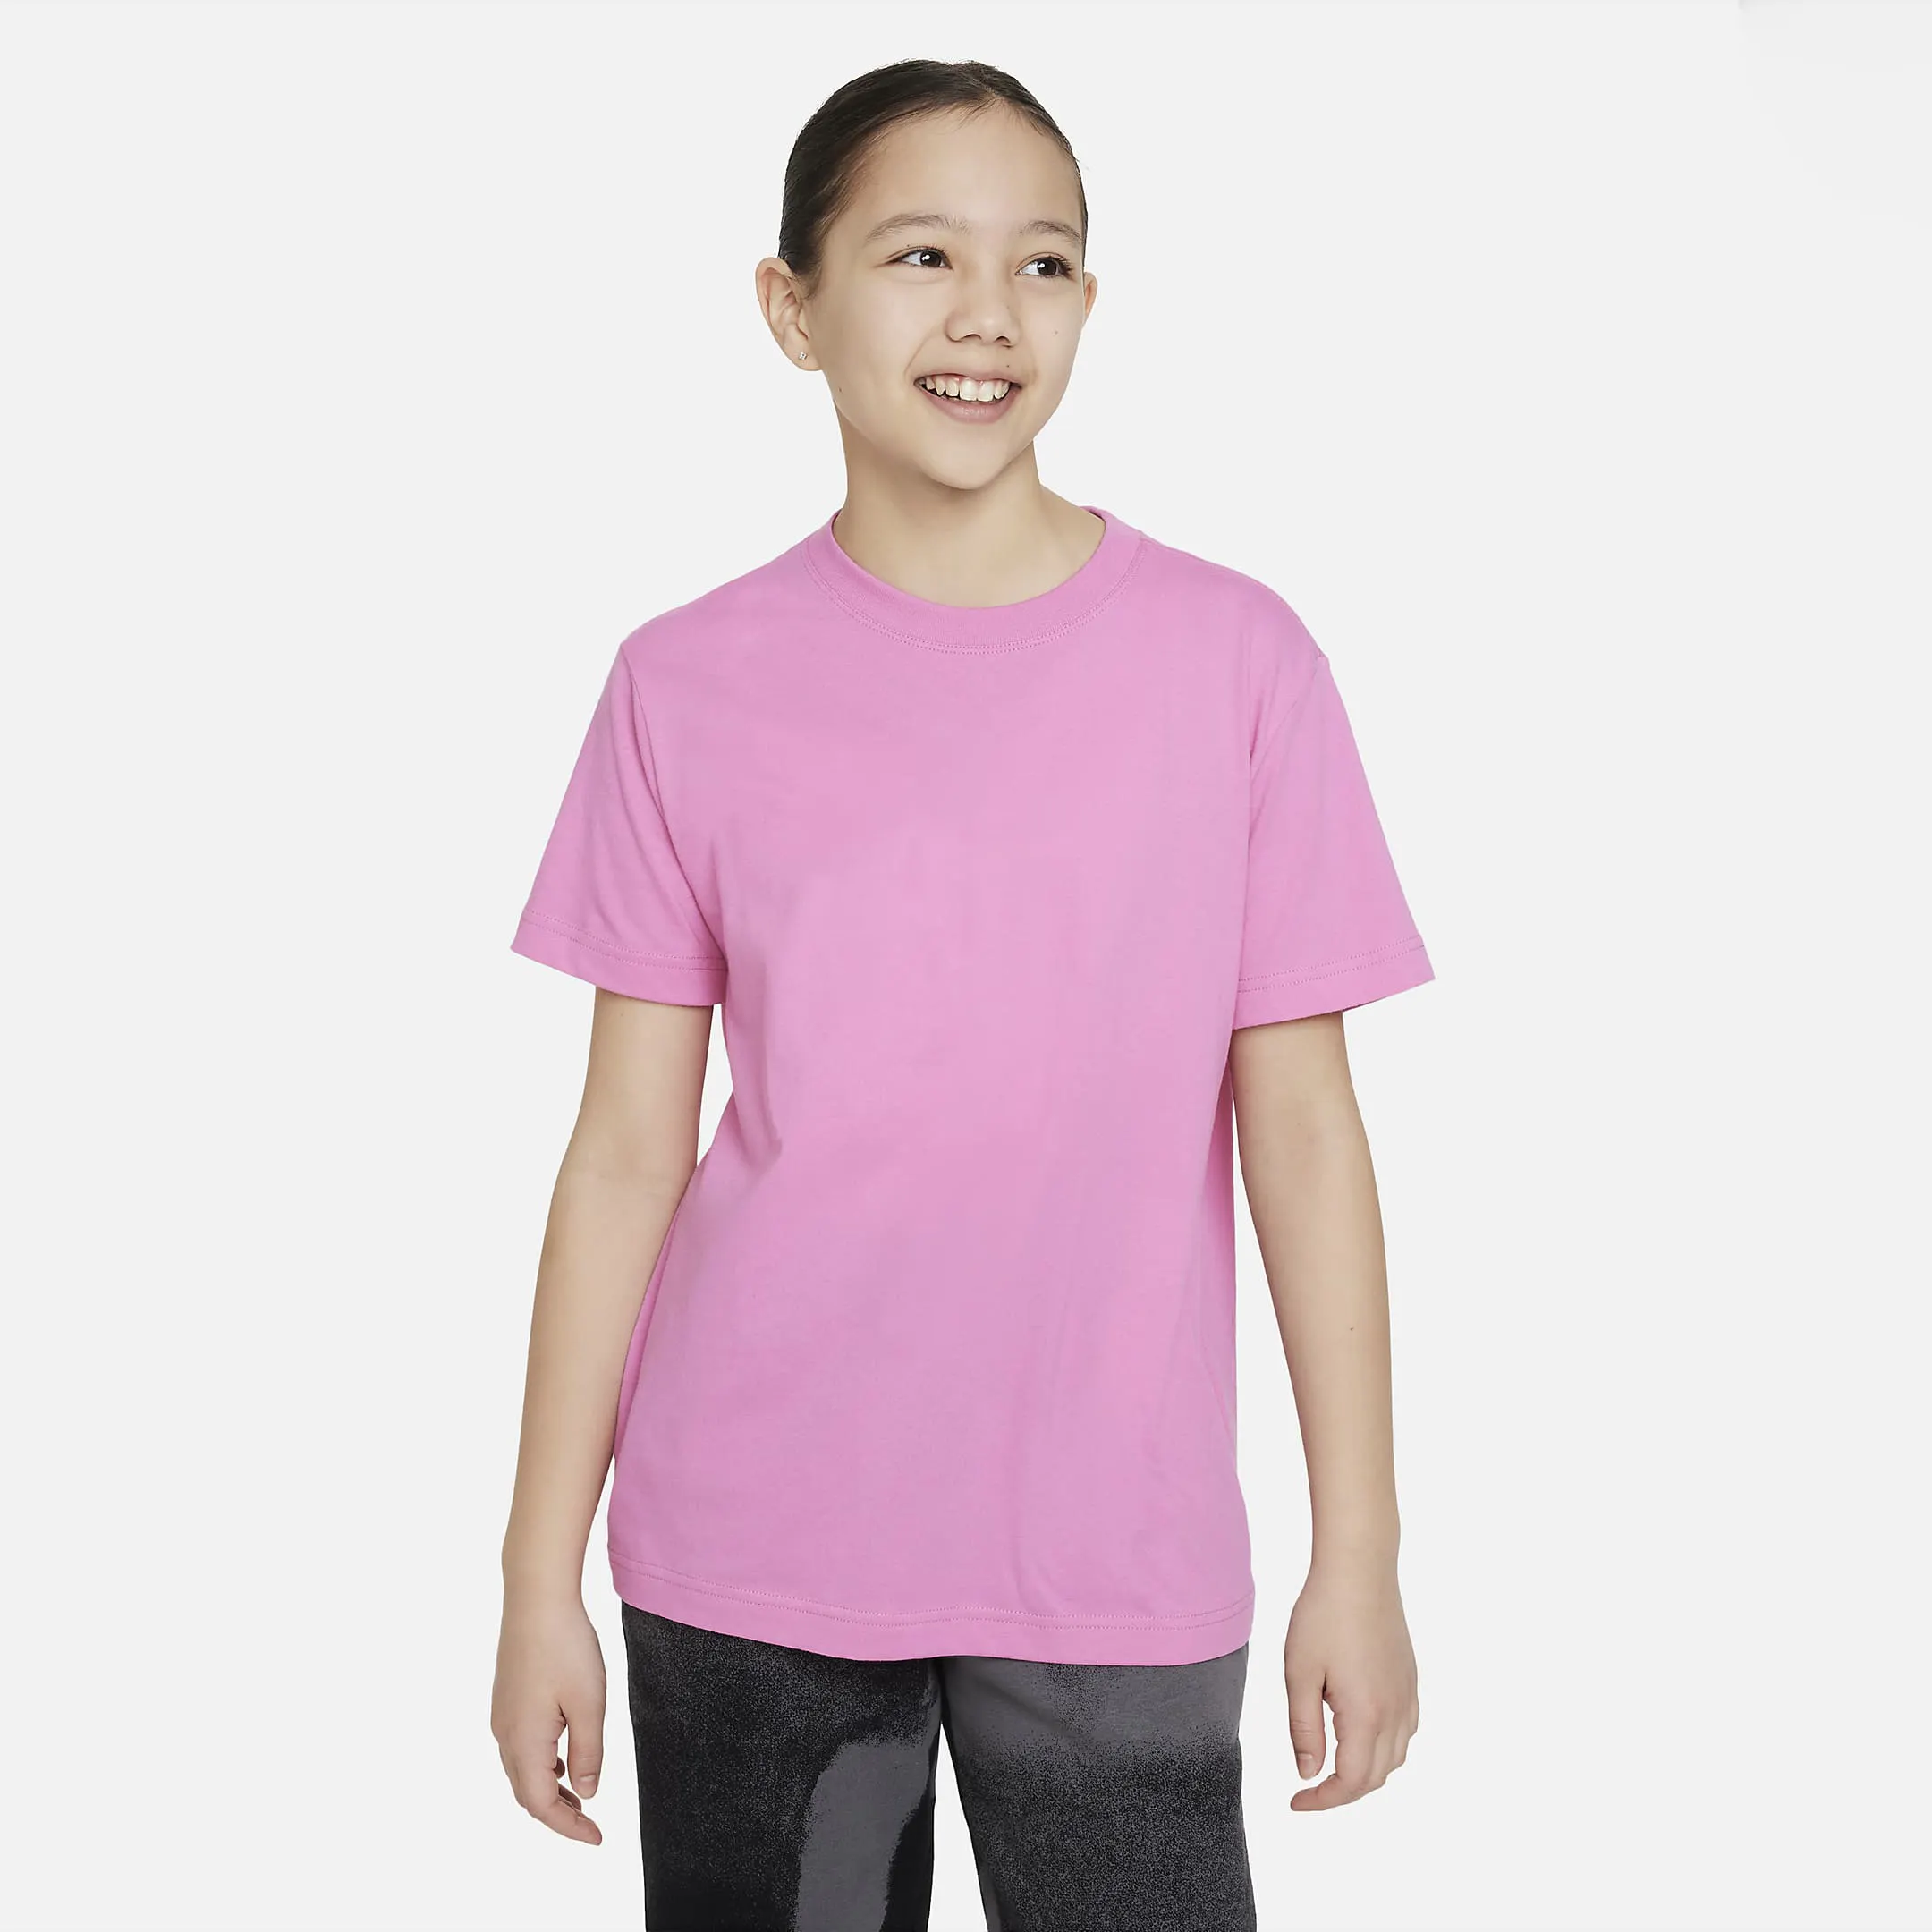 Kids T-shirt Girls Short Sleeve Children Kids t-shirt Short Sleeve T Shirts Printing Child Clothes